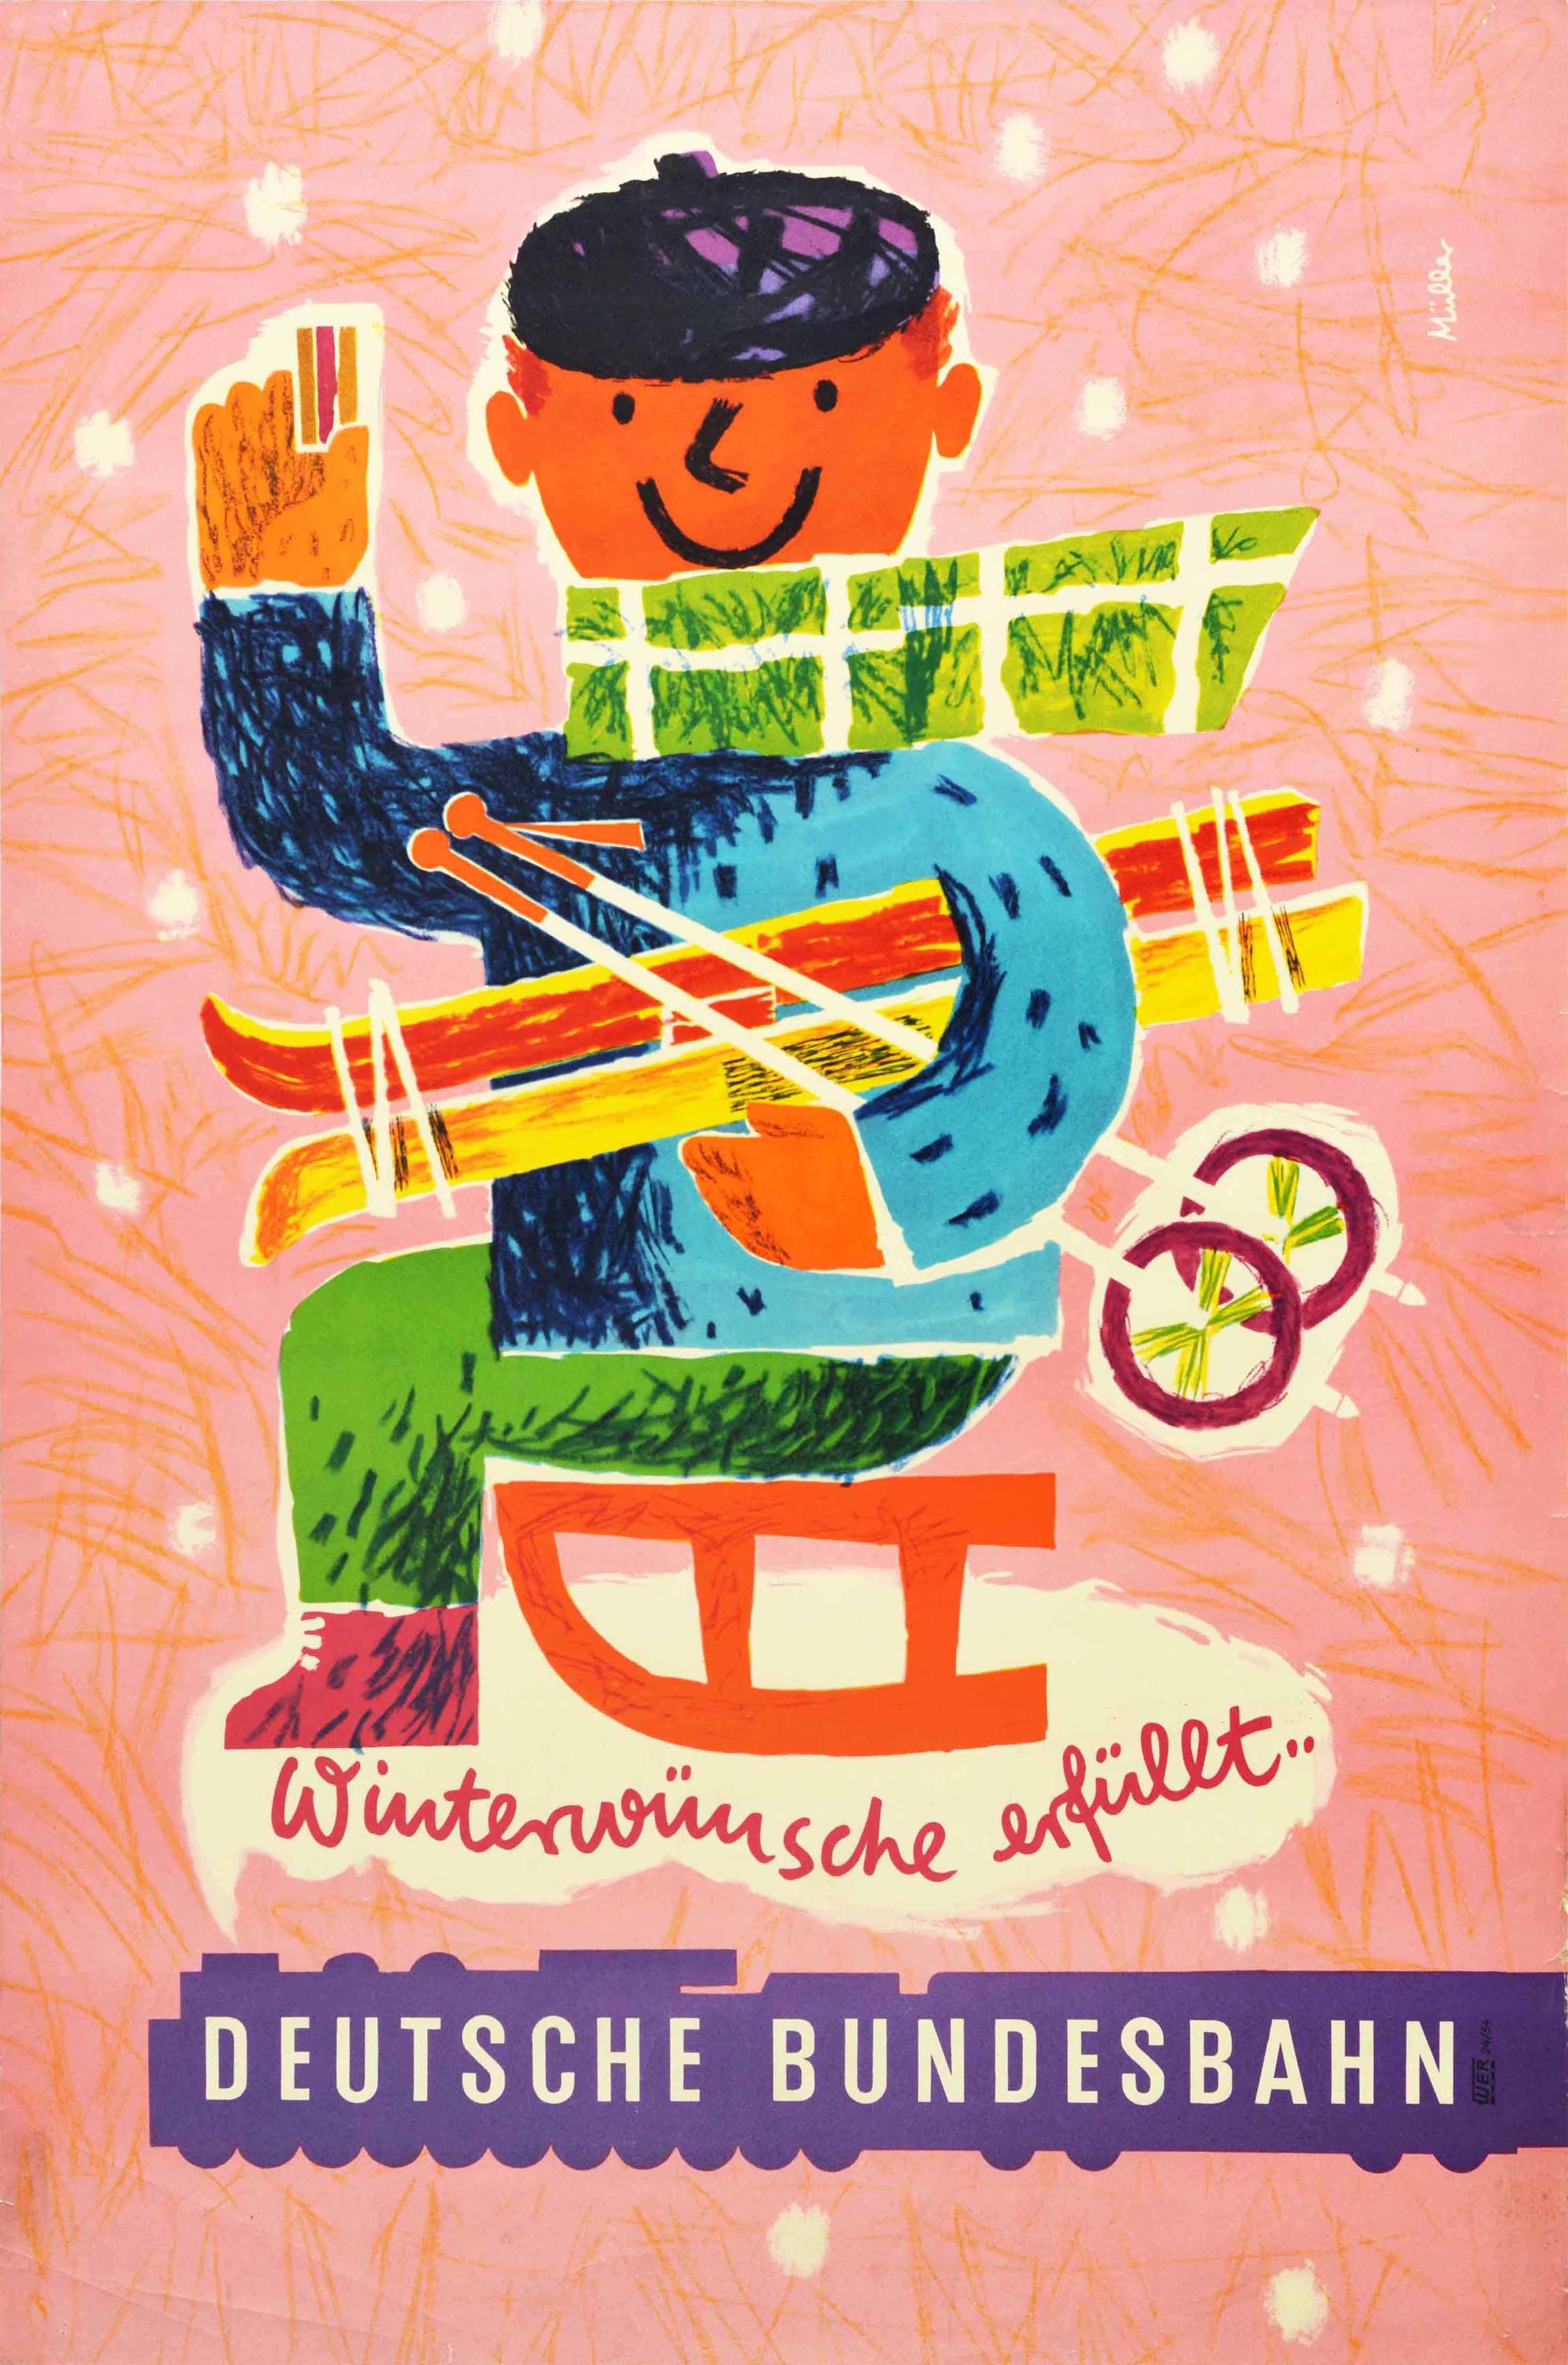 Erika Muller Print - Original Vintage German Railway Poster DB Deutsche Bundesbahn Winter Wishes Ski